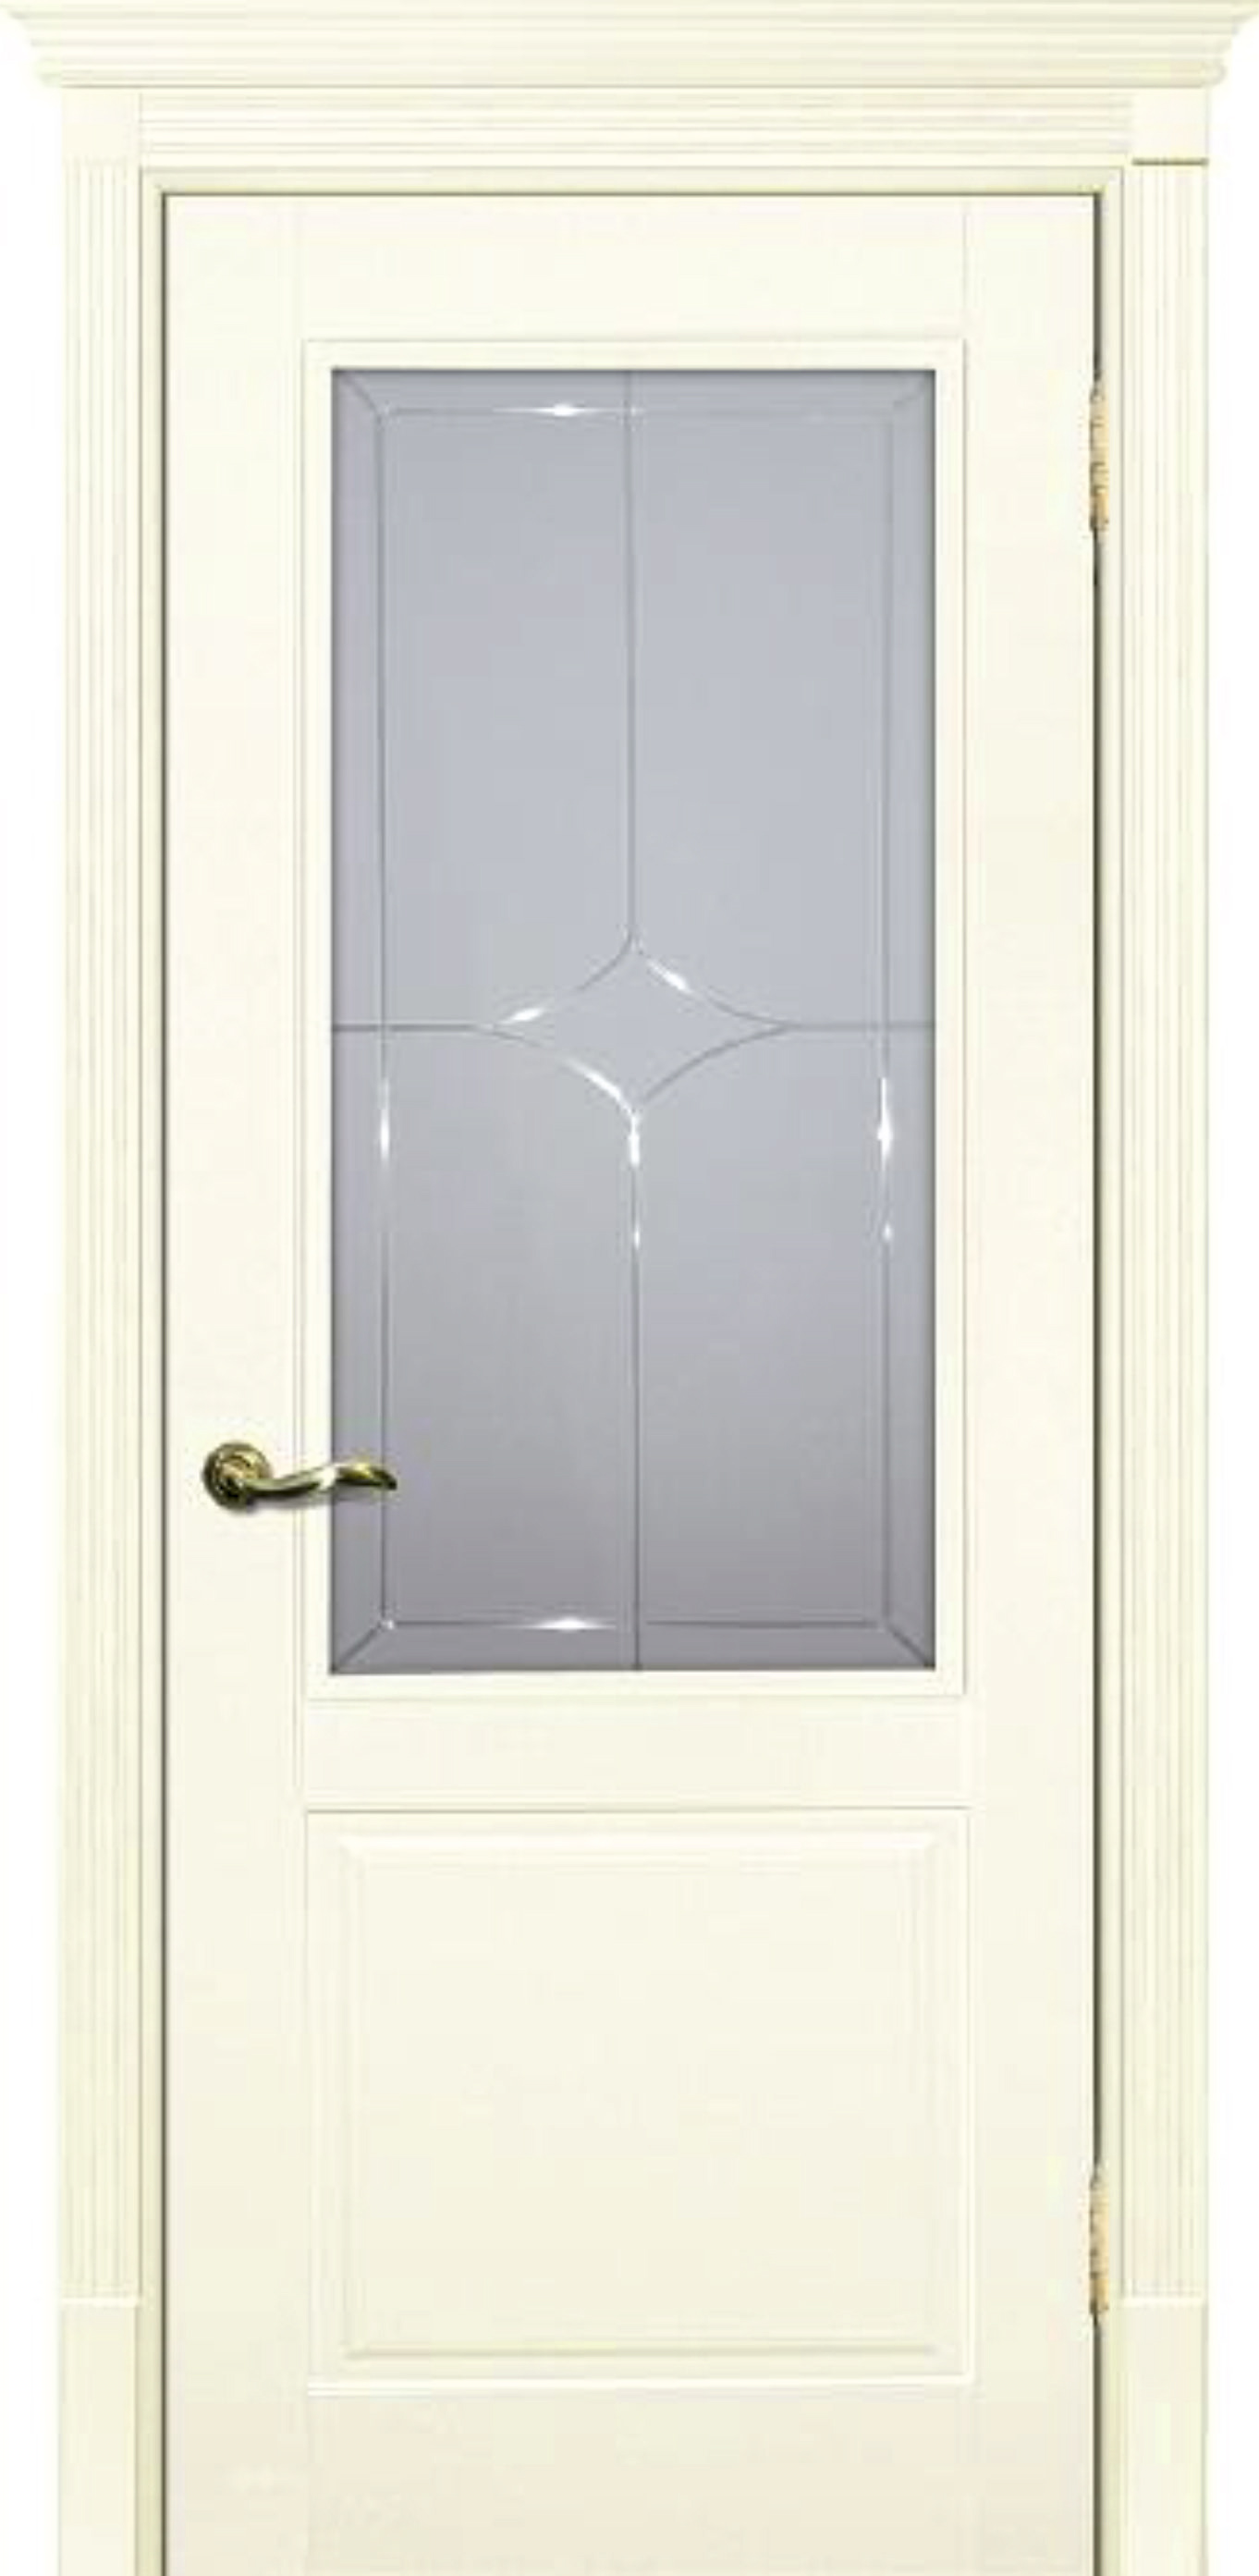 Двери крашеные (Эмаль) ТЕКОНА Смальта 15 со стеклом Слоновая кость ral 1013 размер 200 х 60 см. артикул F0000074264